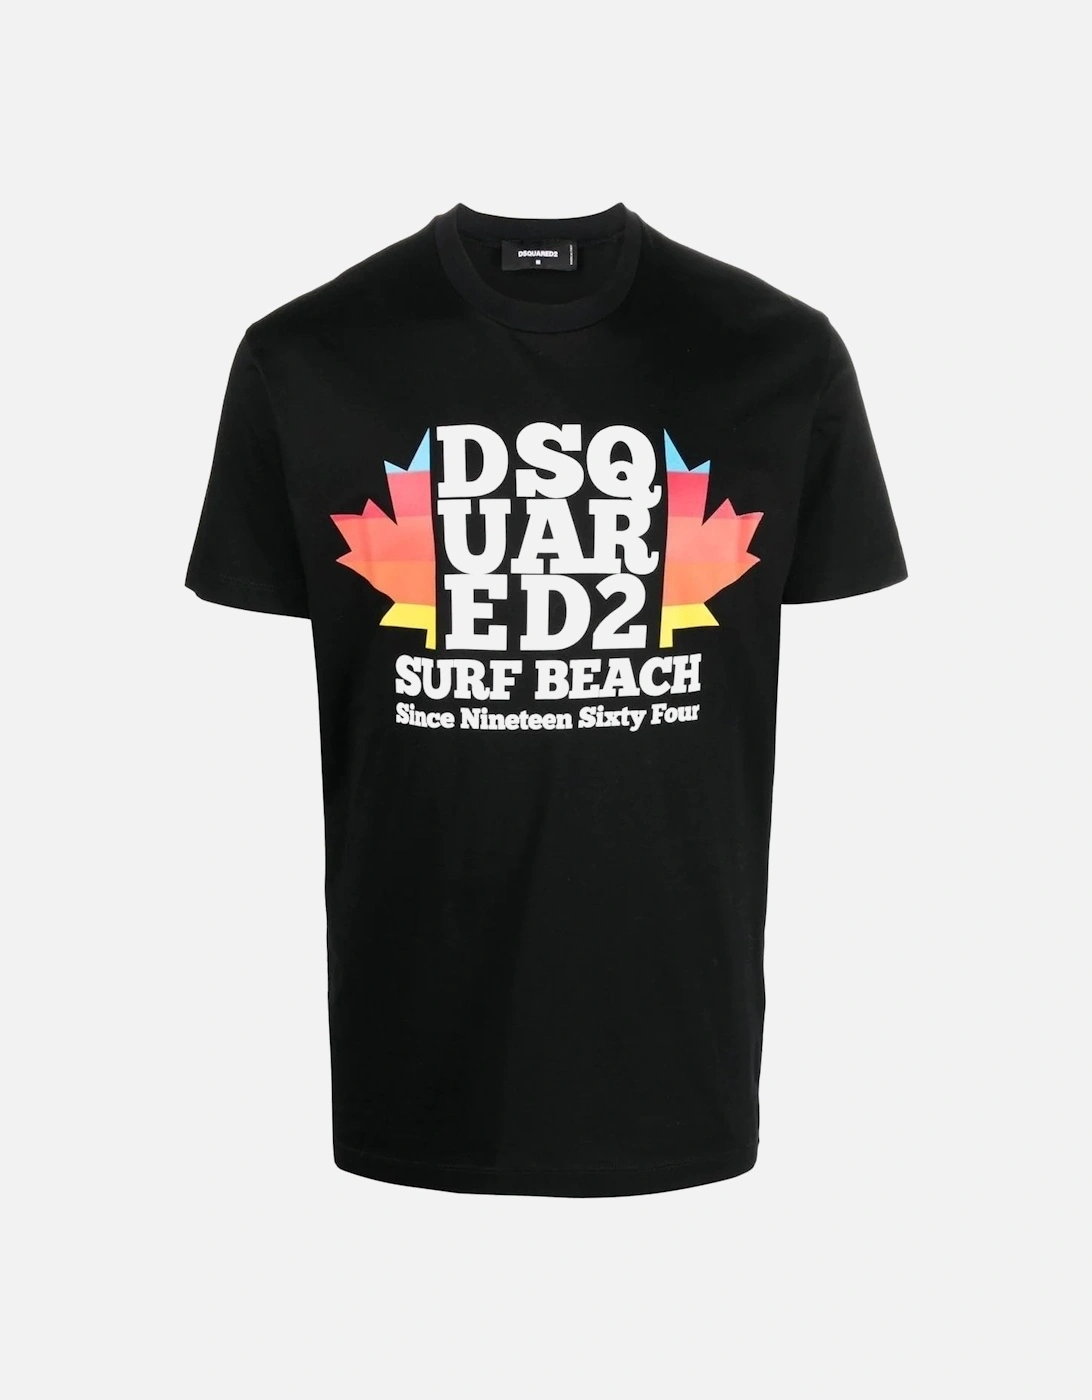 Surf Beach T-shirt, 6 of 5